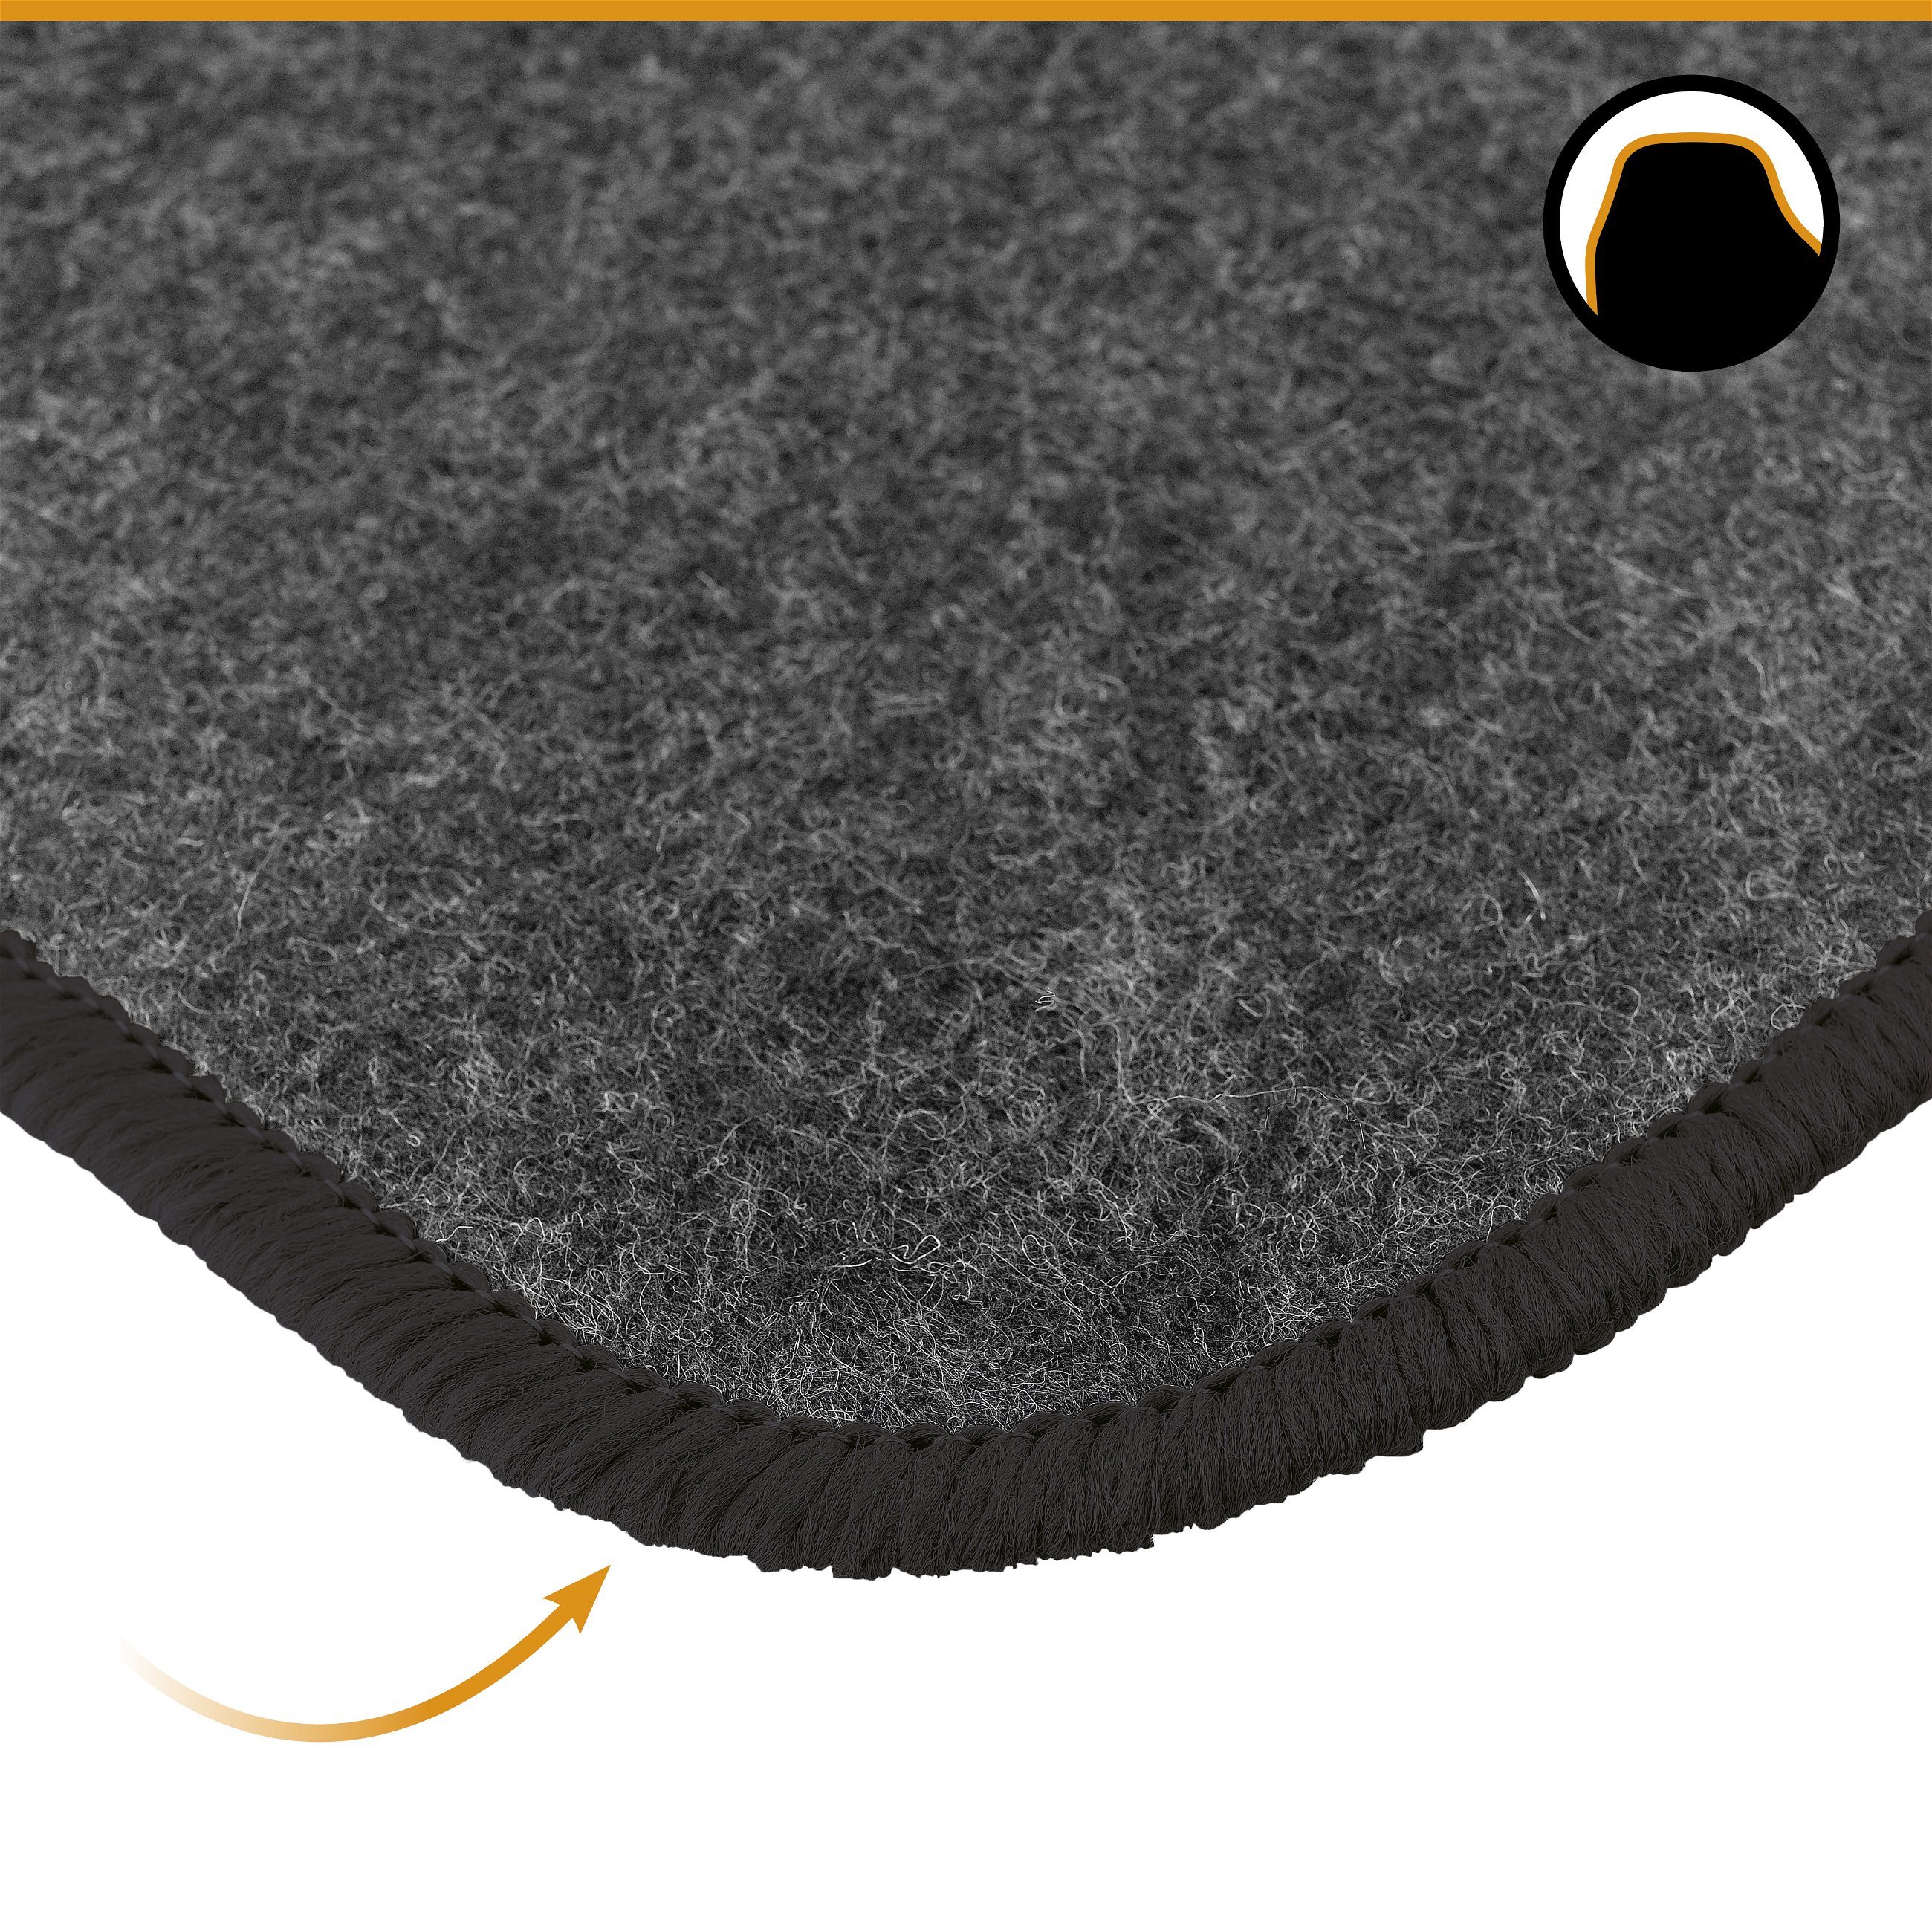 Auto-Teppich Matrix, Universal Fußmatten-Set 4-teilig schwarz, Auto-Teppich  Matrix, Universal Fußmatten-Set 4-teilig schwarz, Universal Textil  Fußmatten, Textil Fußmatten, Automatten & Teppiche